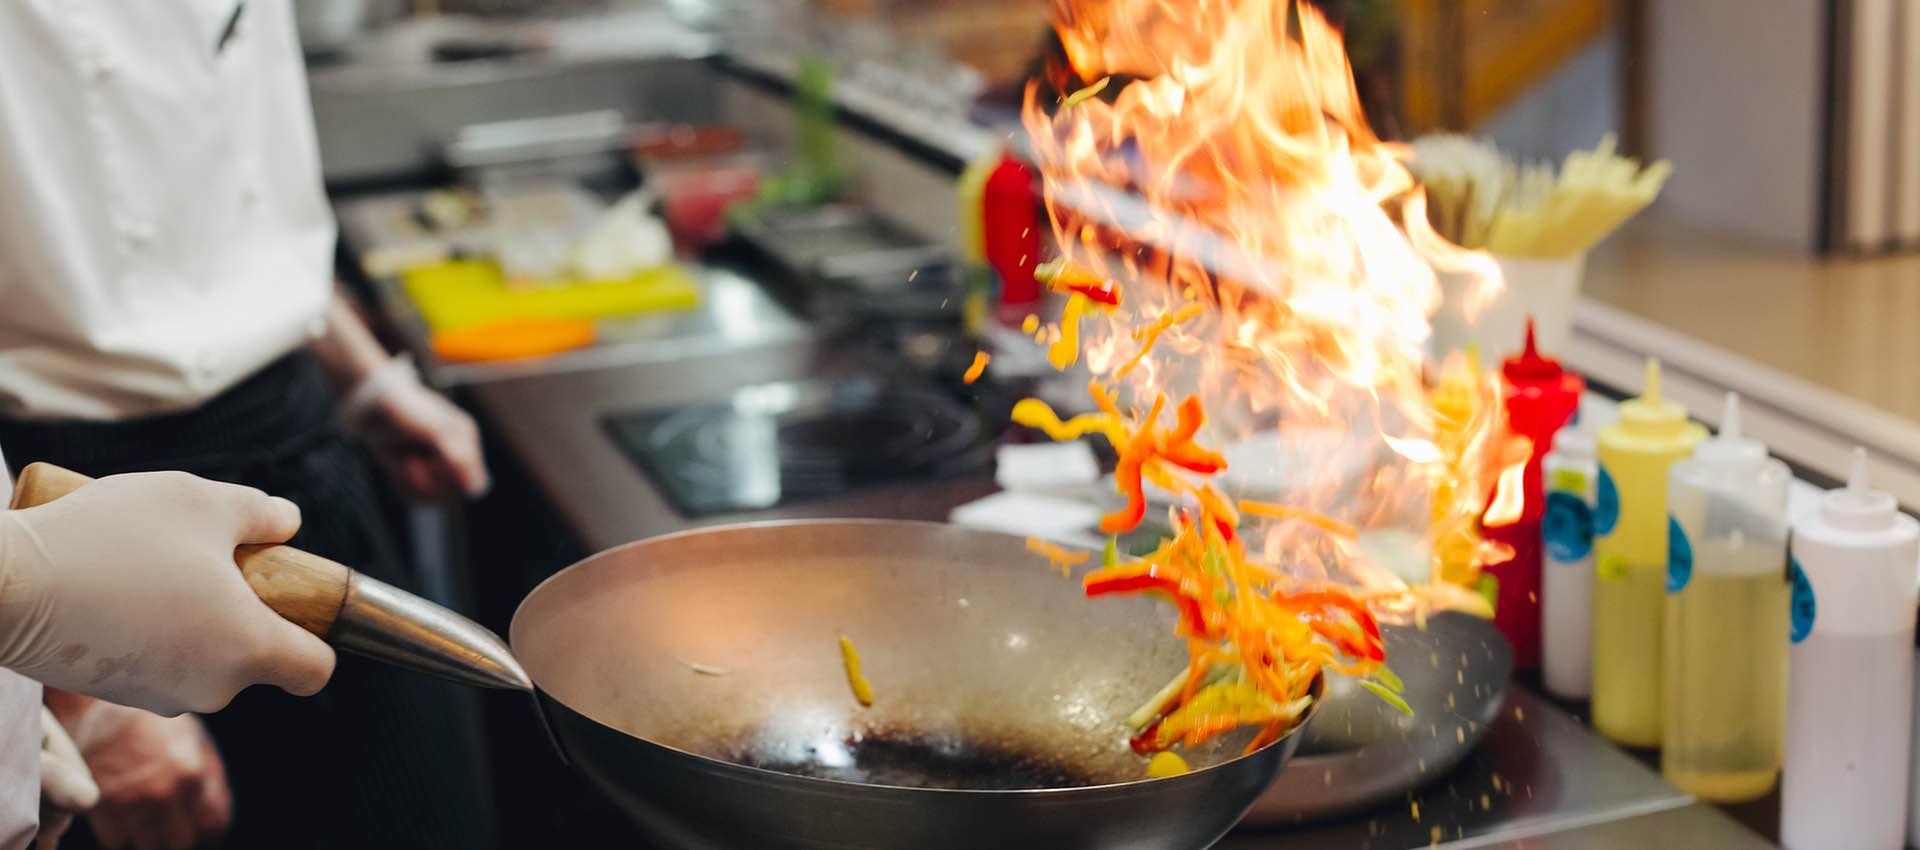 Tips For Preventing Restaurant Fires